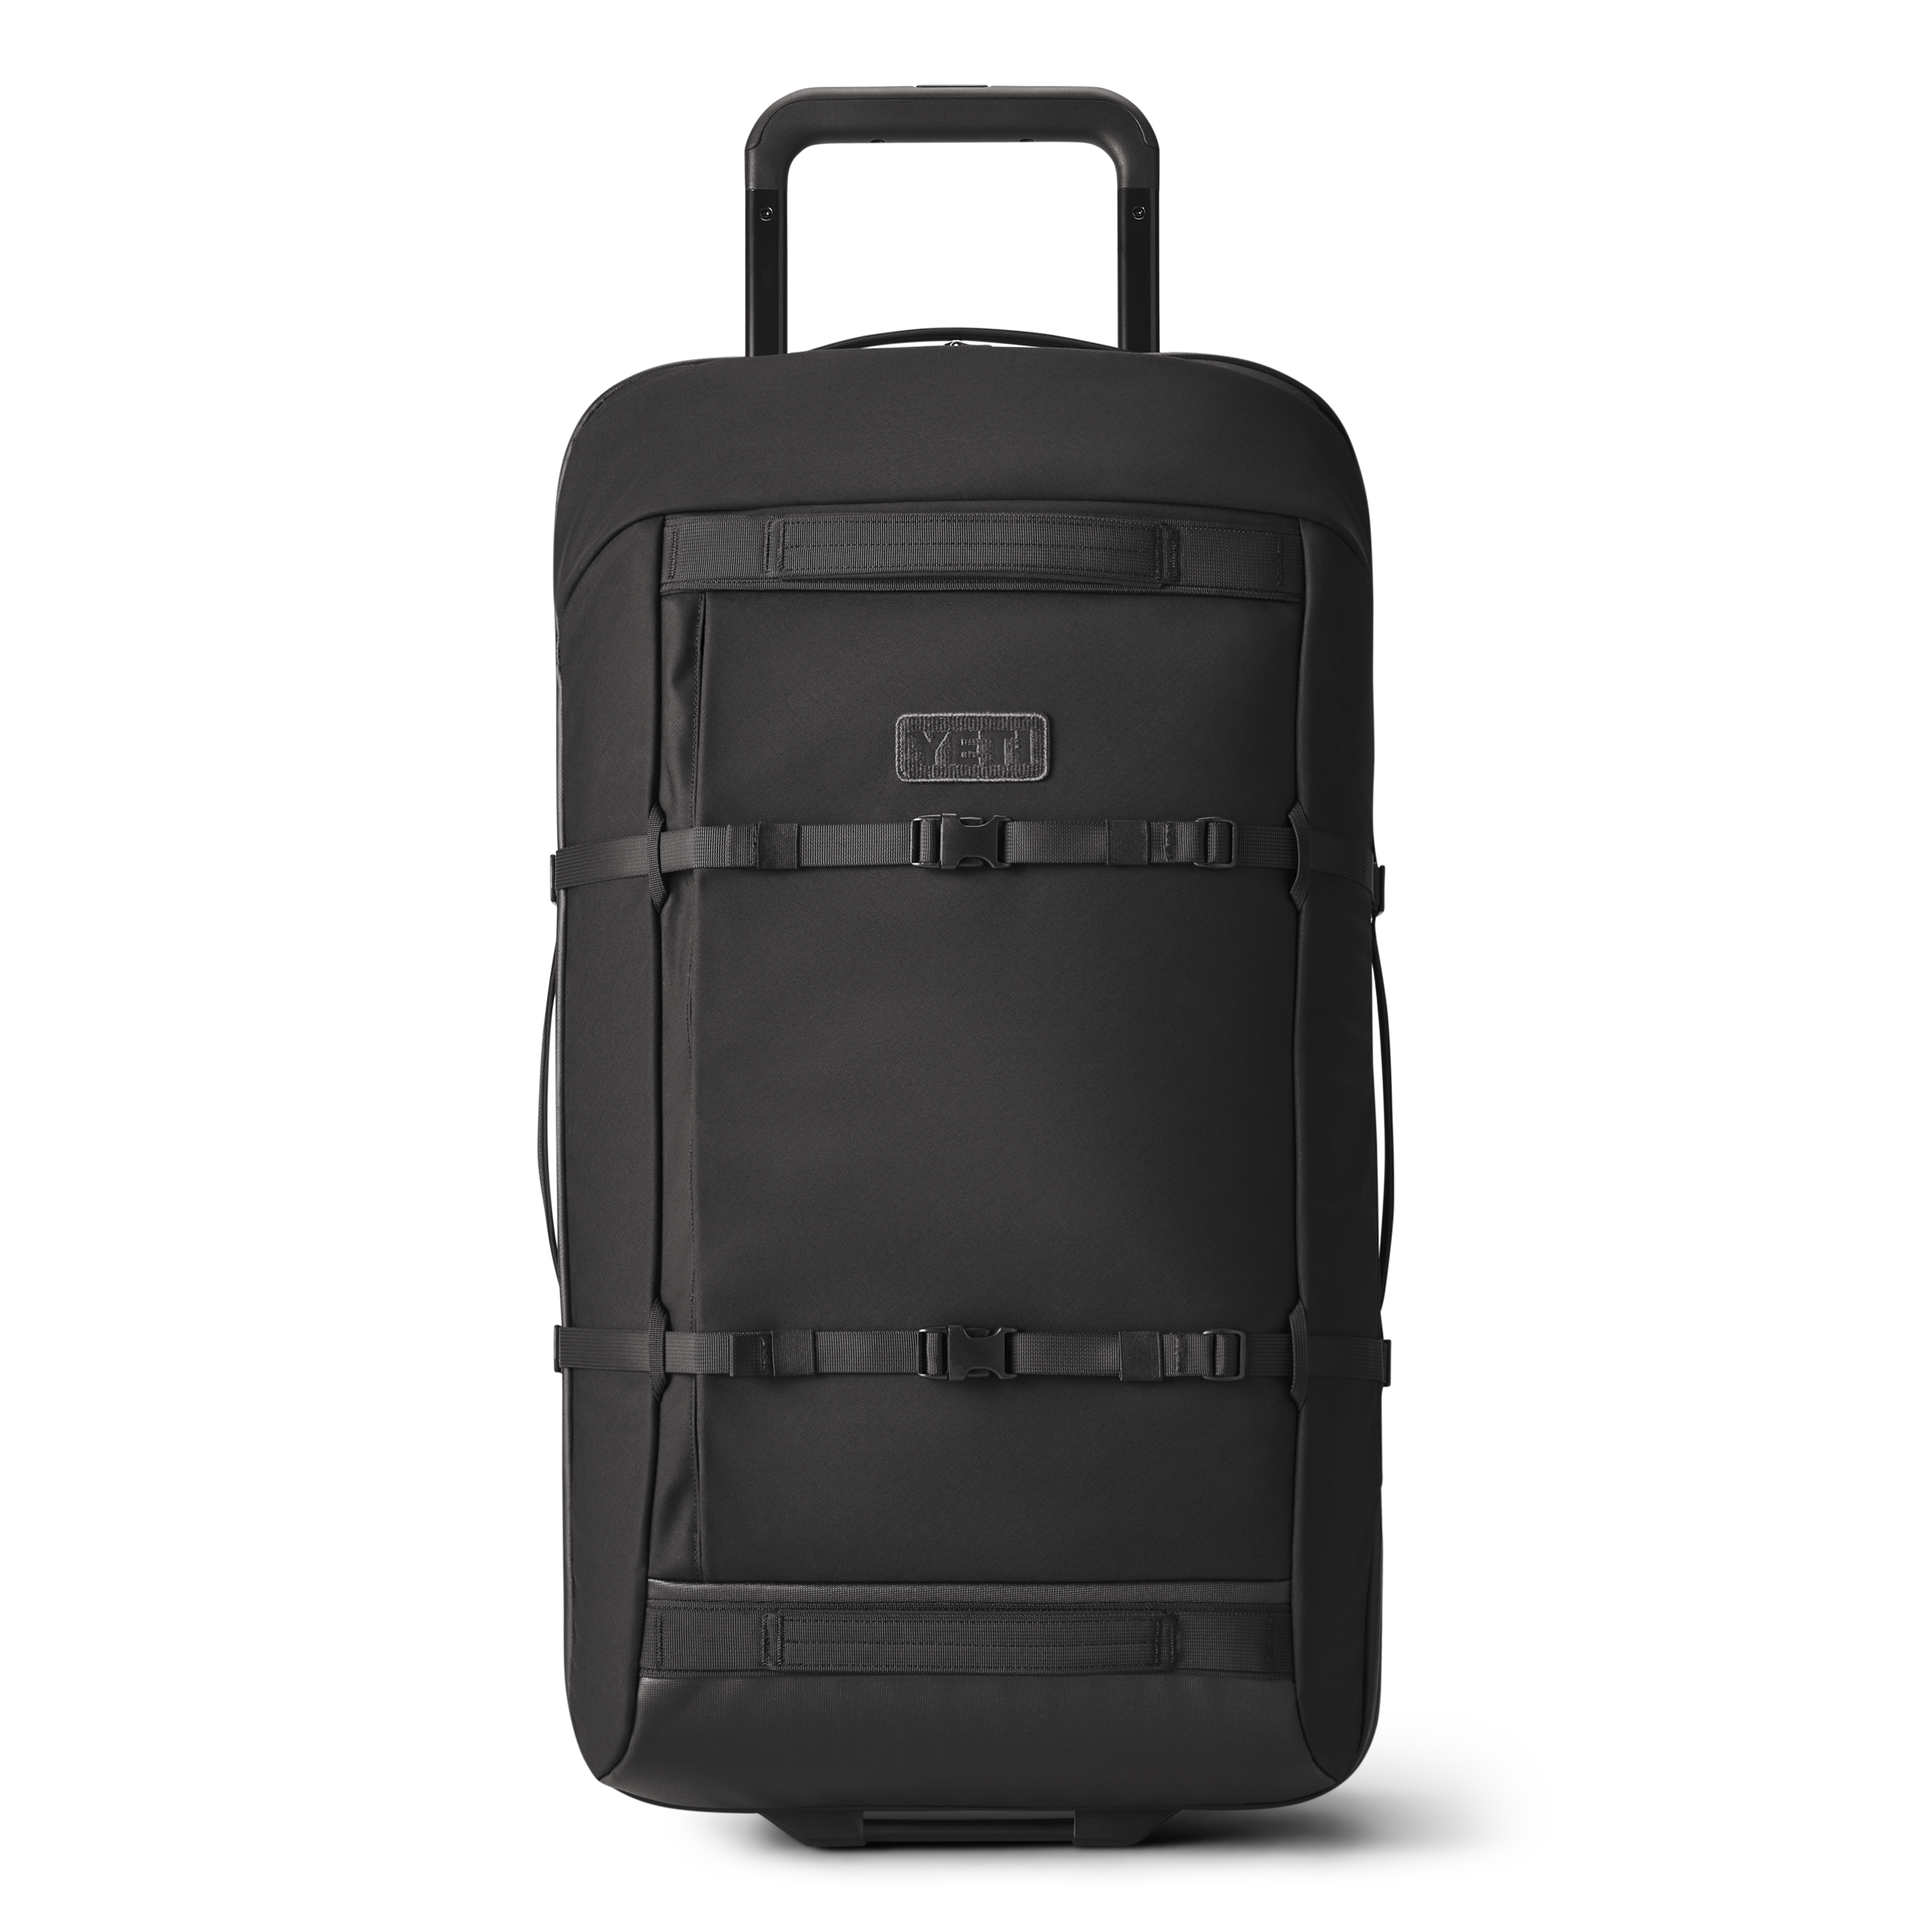 http://eu.yeti.com/cdn/shop/products/Bags_29_Luggage_Black_Front_00318_B.png?v=1673262398